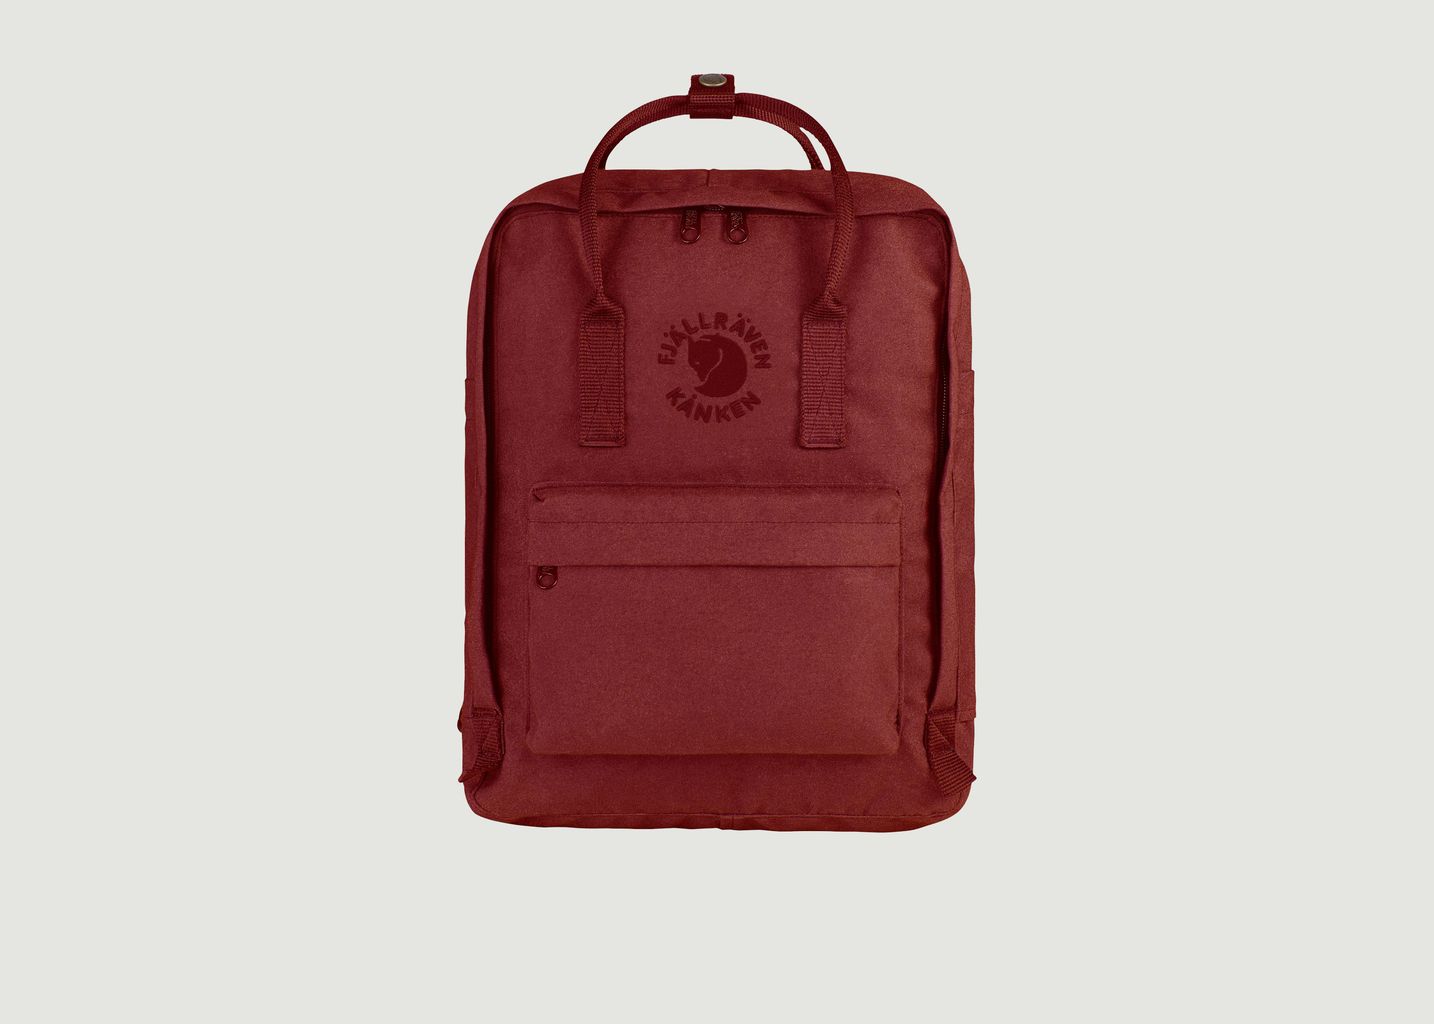 Re-Kanken backpack  - Fjällräven